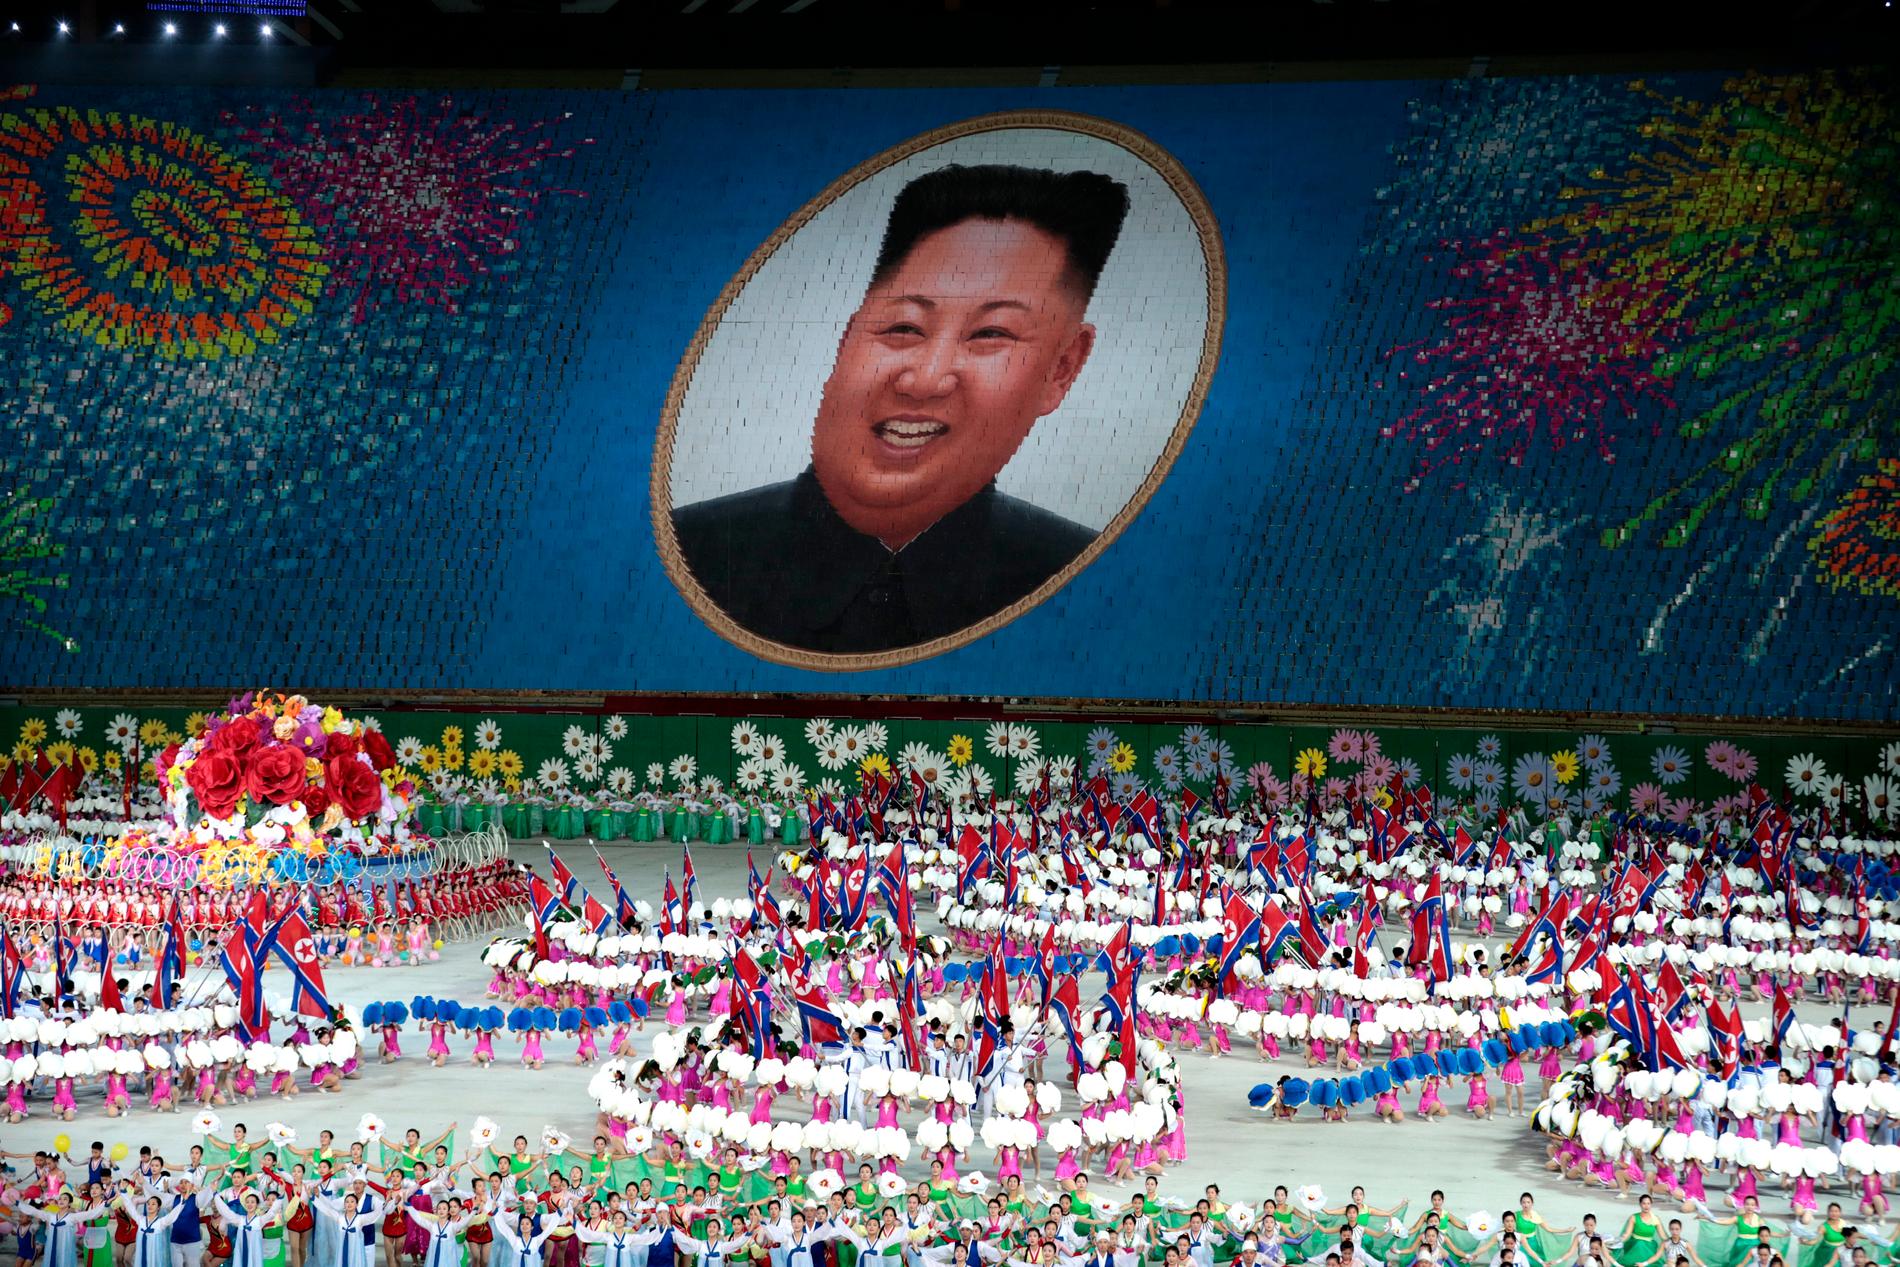 Deltagare i de så kallade masspelen i Pyongyang 2019 skapar en bild av Nordkoreas ledare Kim Jong-Un med hjälp av färgade plakat.